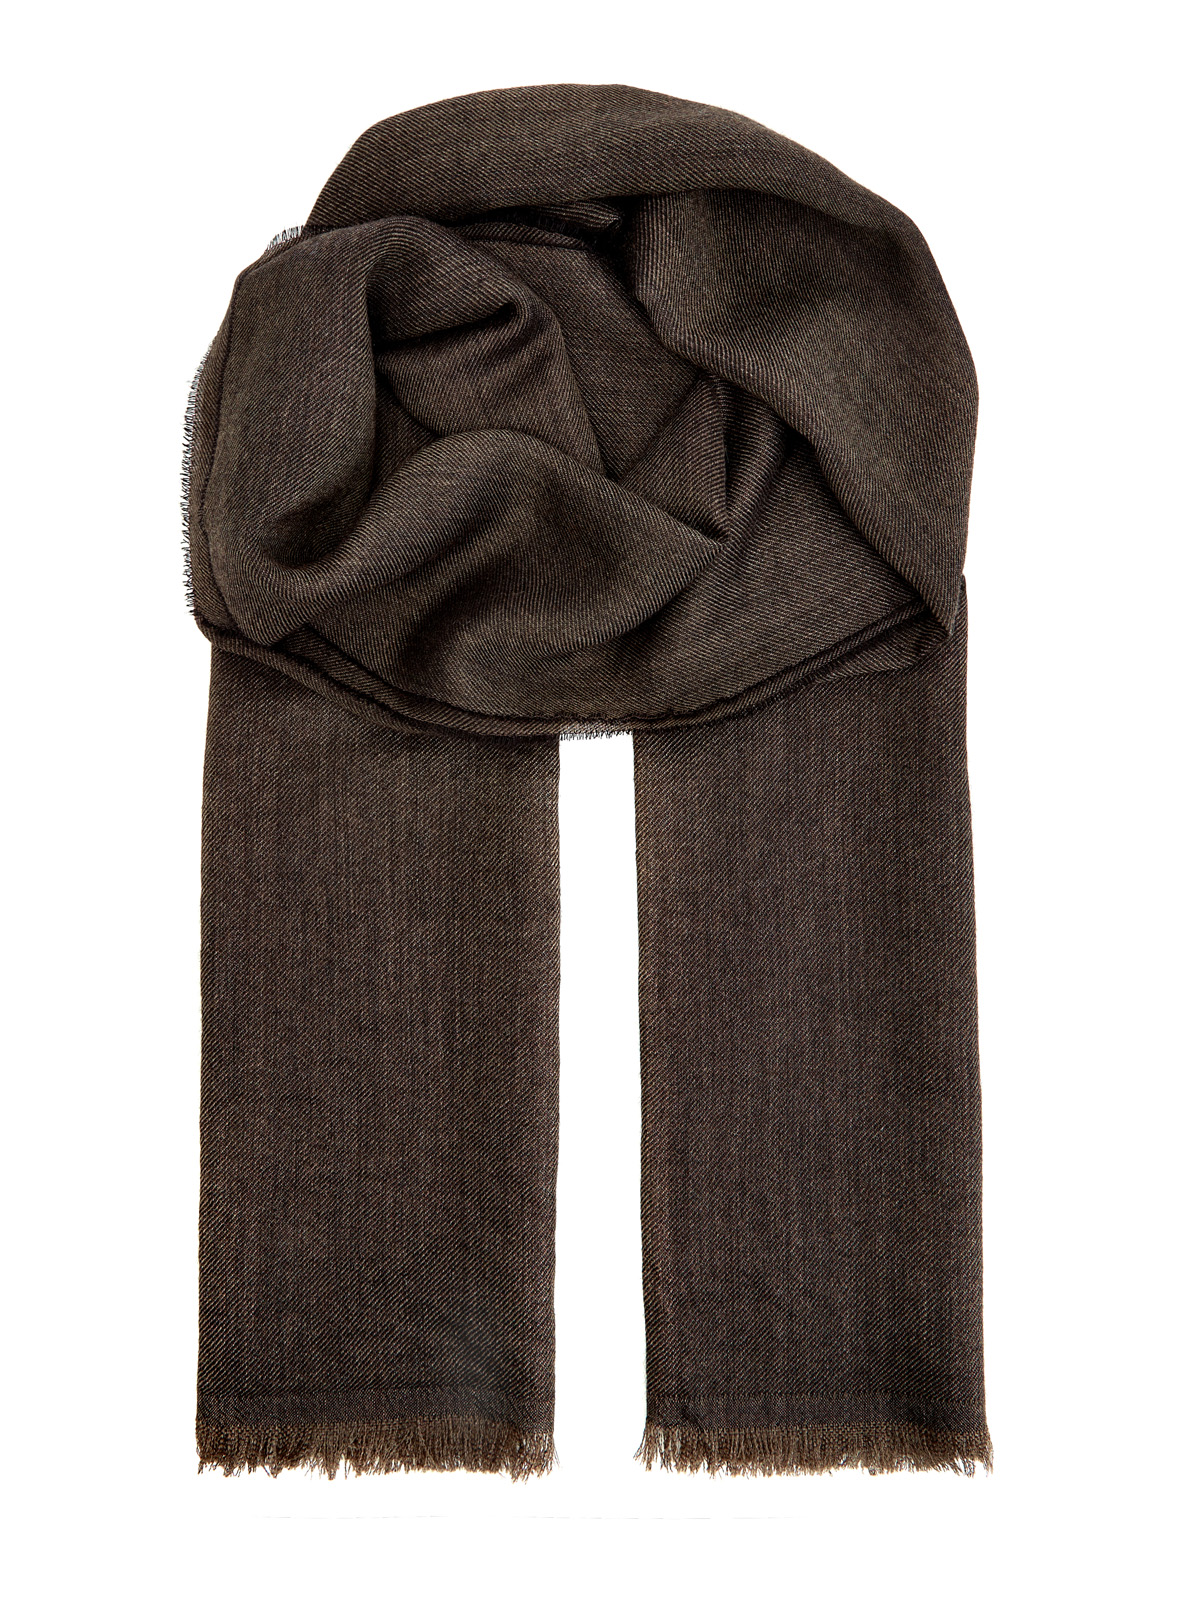 Кашемировый шарф с волокнами шелка в коричневой гамме